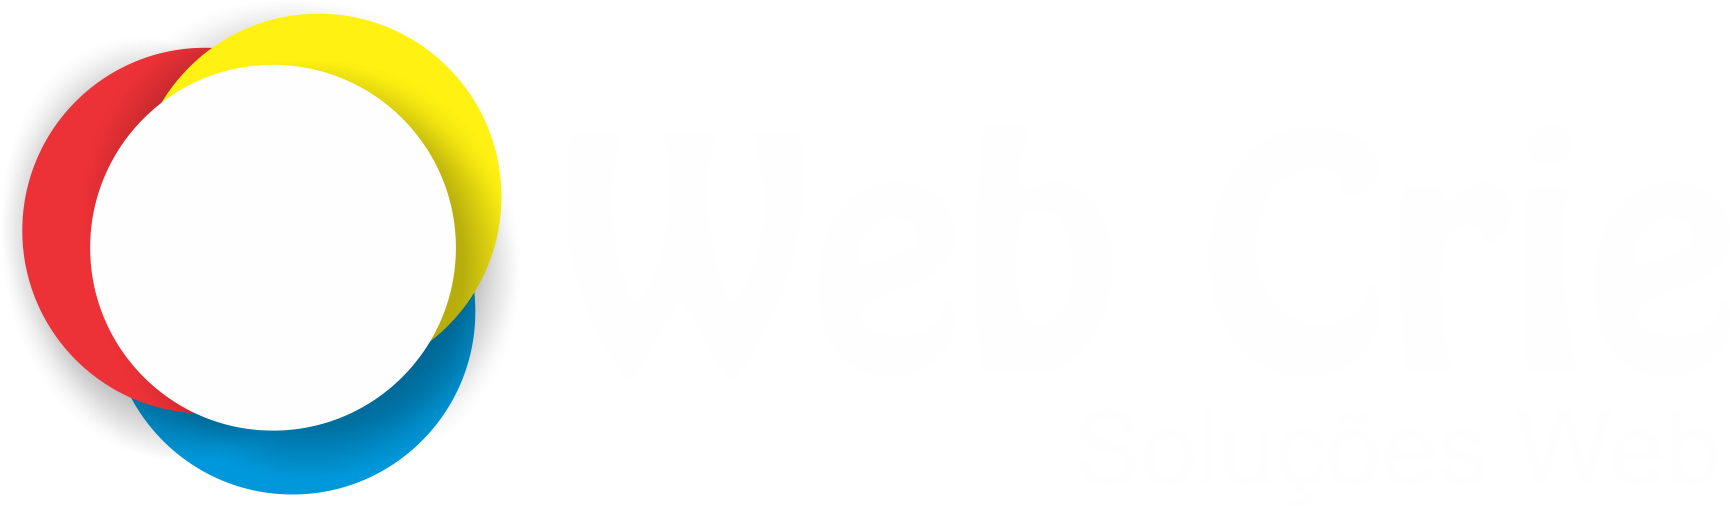 Web Crie